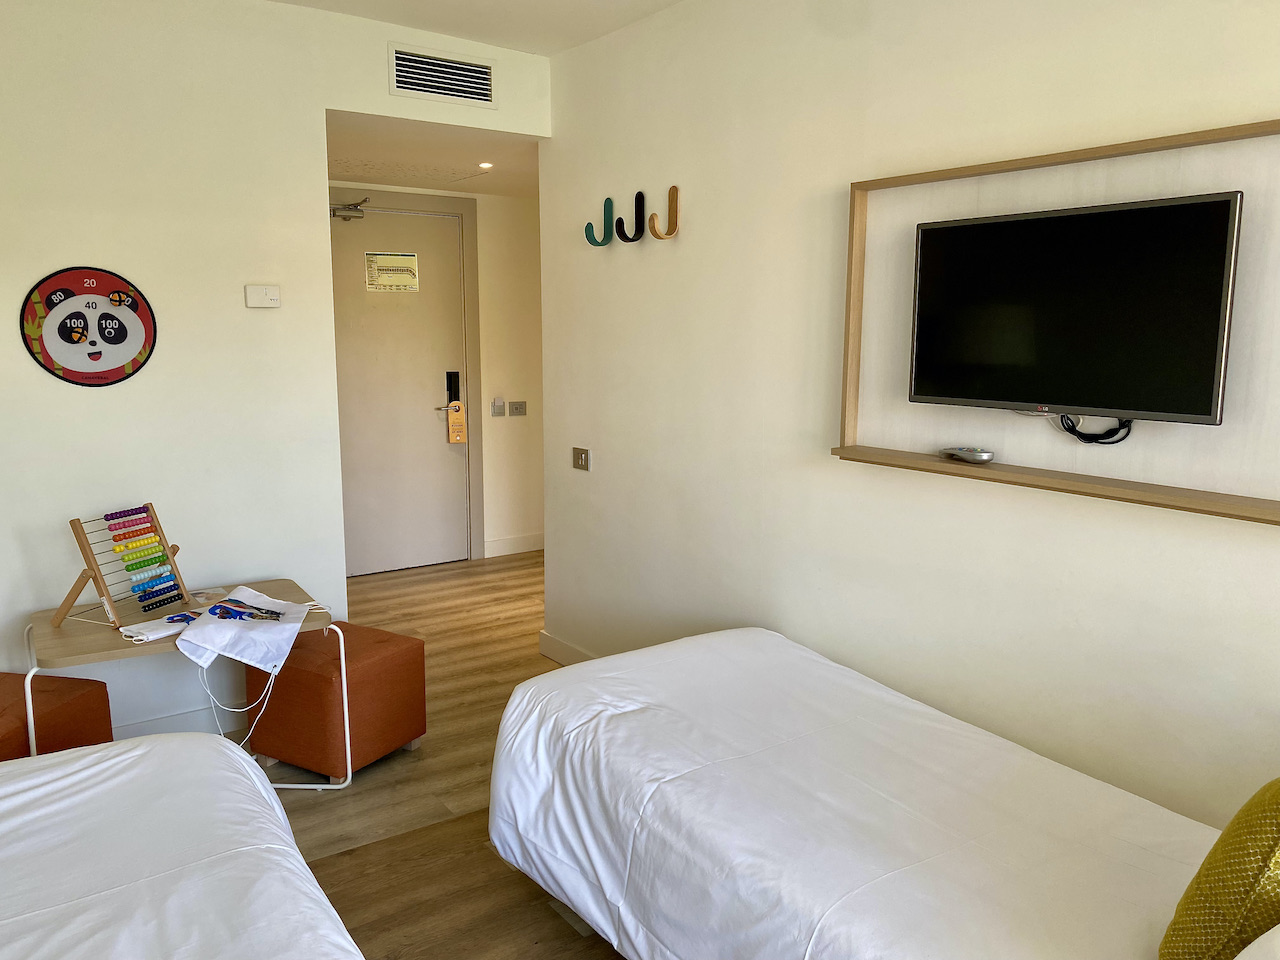 2 single beds, hooks on. a wall and a flatscreen tv